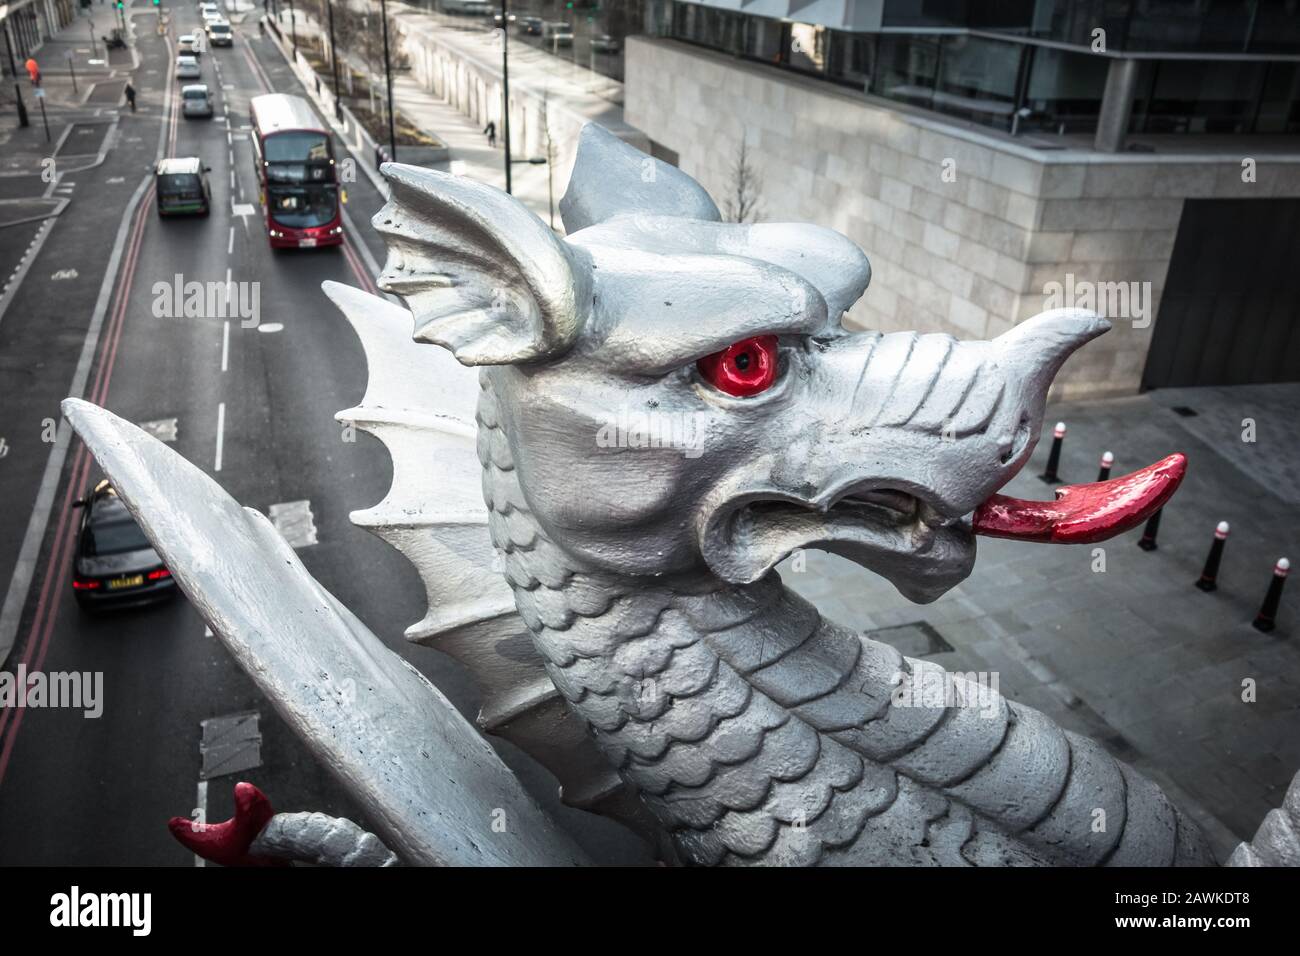 Gros plan des dragons d'argent de la City de Londres sur Holborn Viaduct, Farringdon Street, Londres, Angleterre, Royaume-Uni Banque D'Images